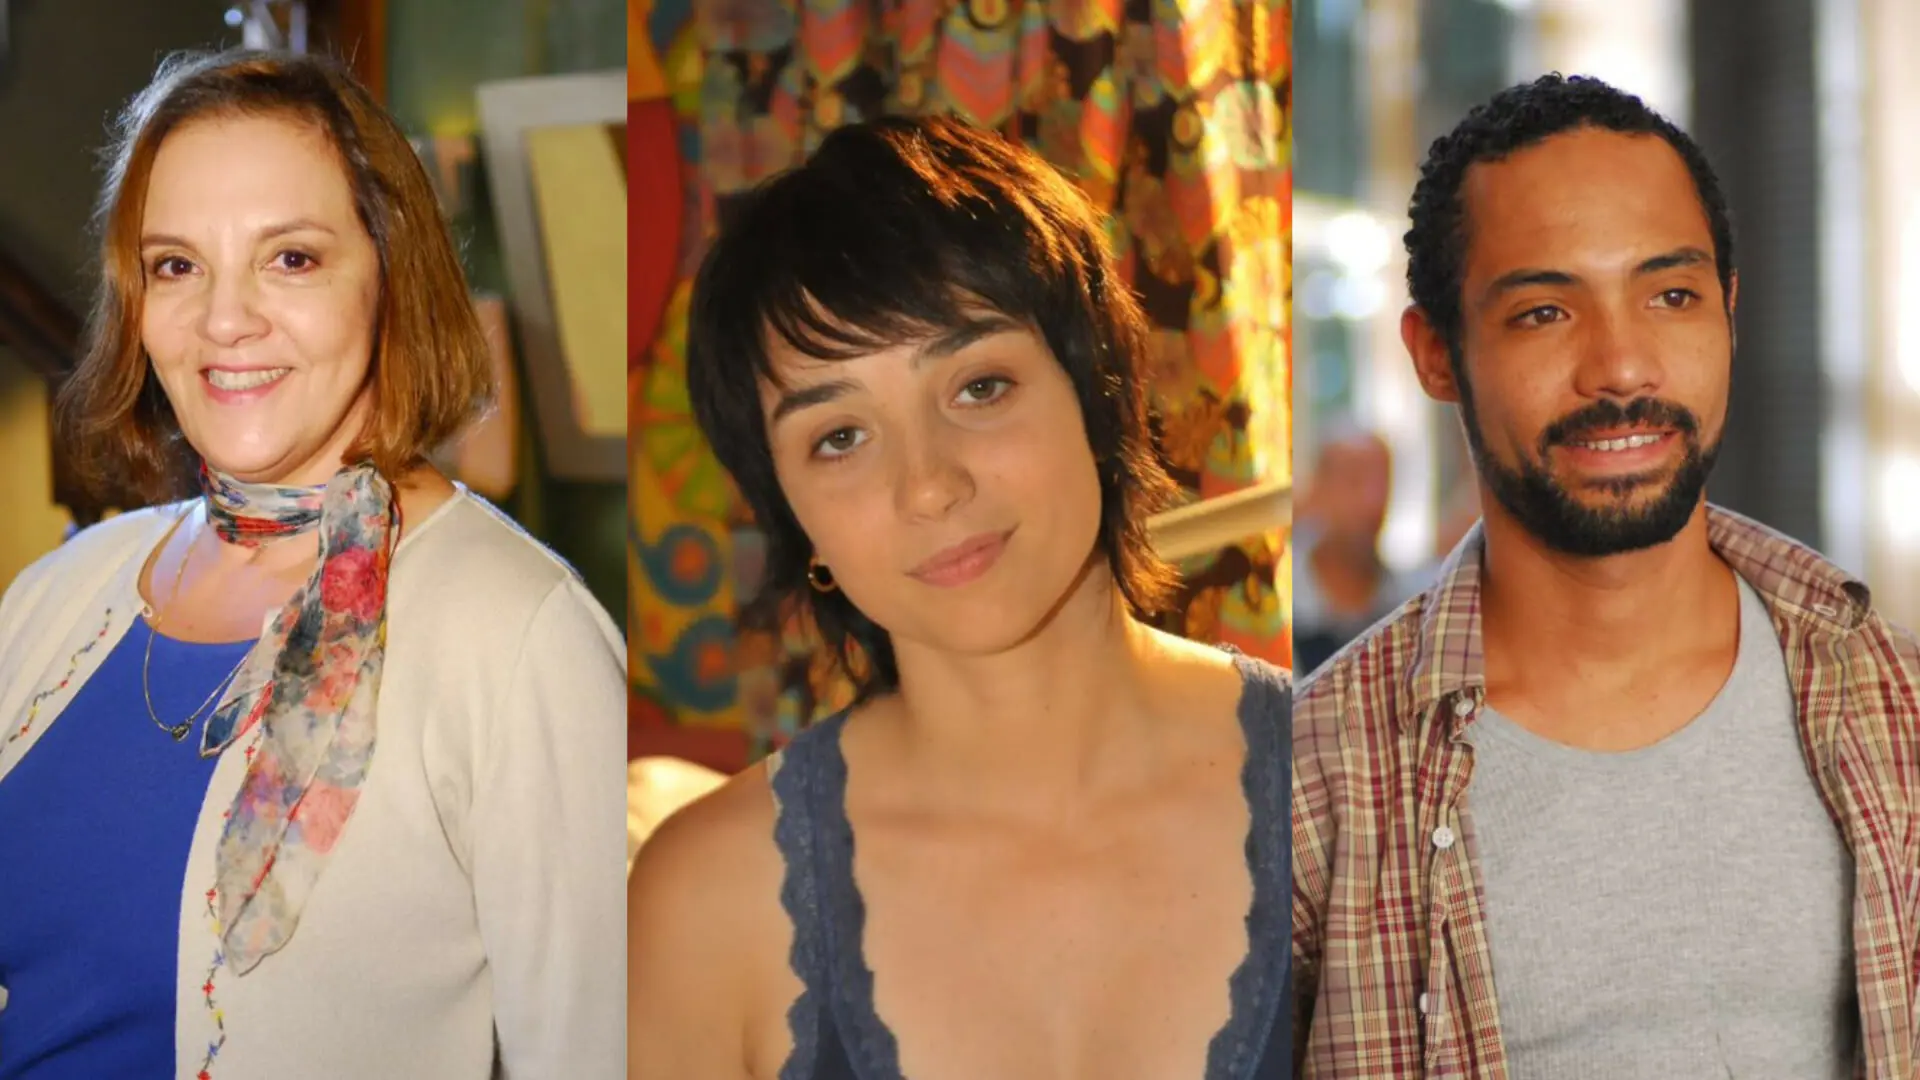 Augusta (Denise Del Vecchio), Andrea (Simone Spoladore) e Ivan (Silvio Guindane) em Vidas em Jogo